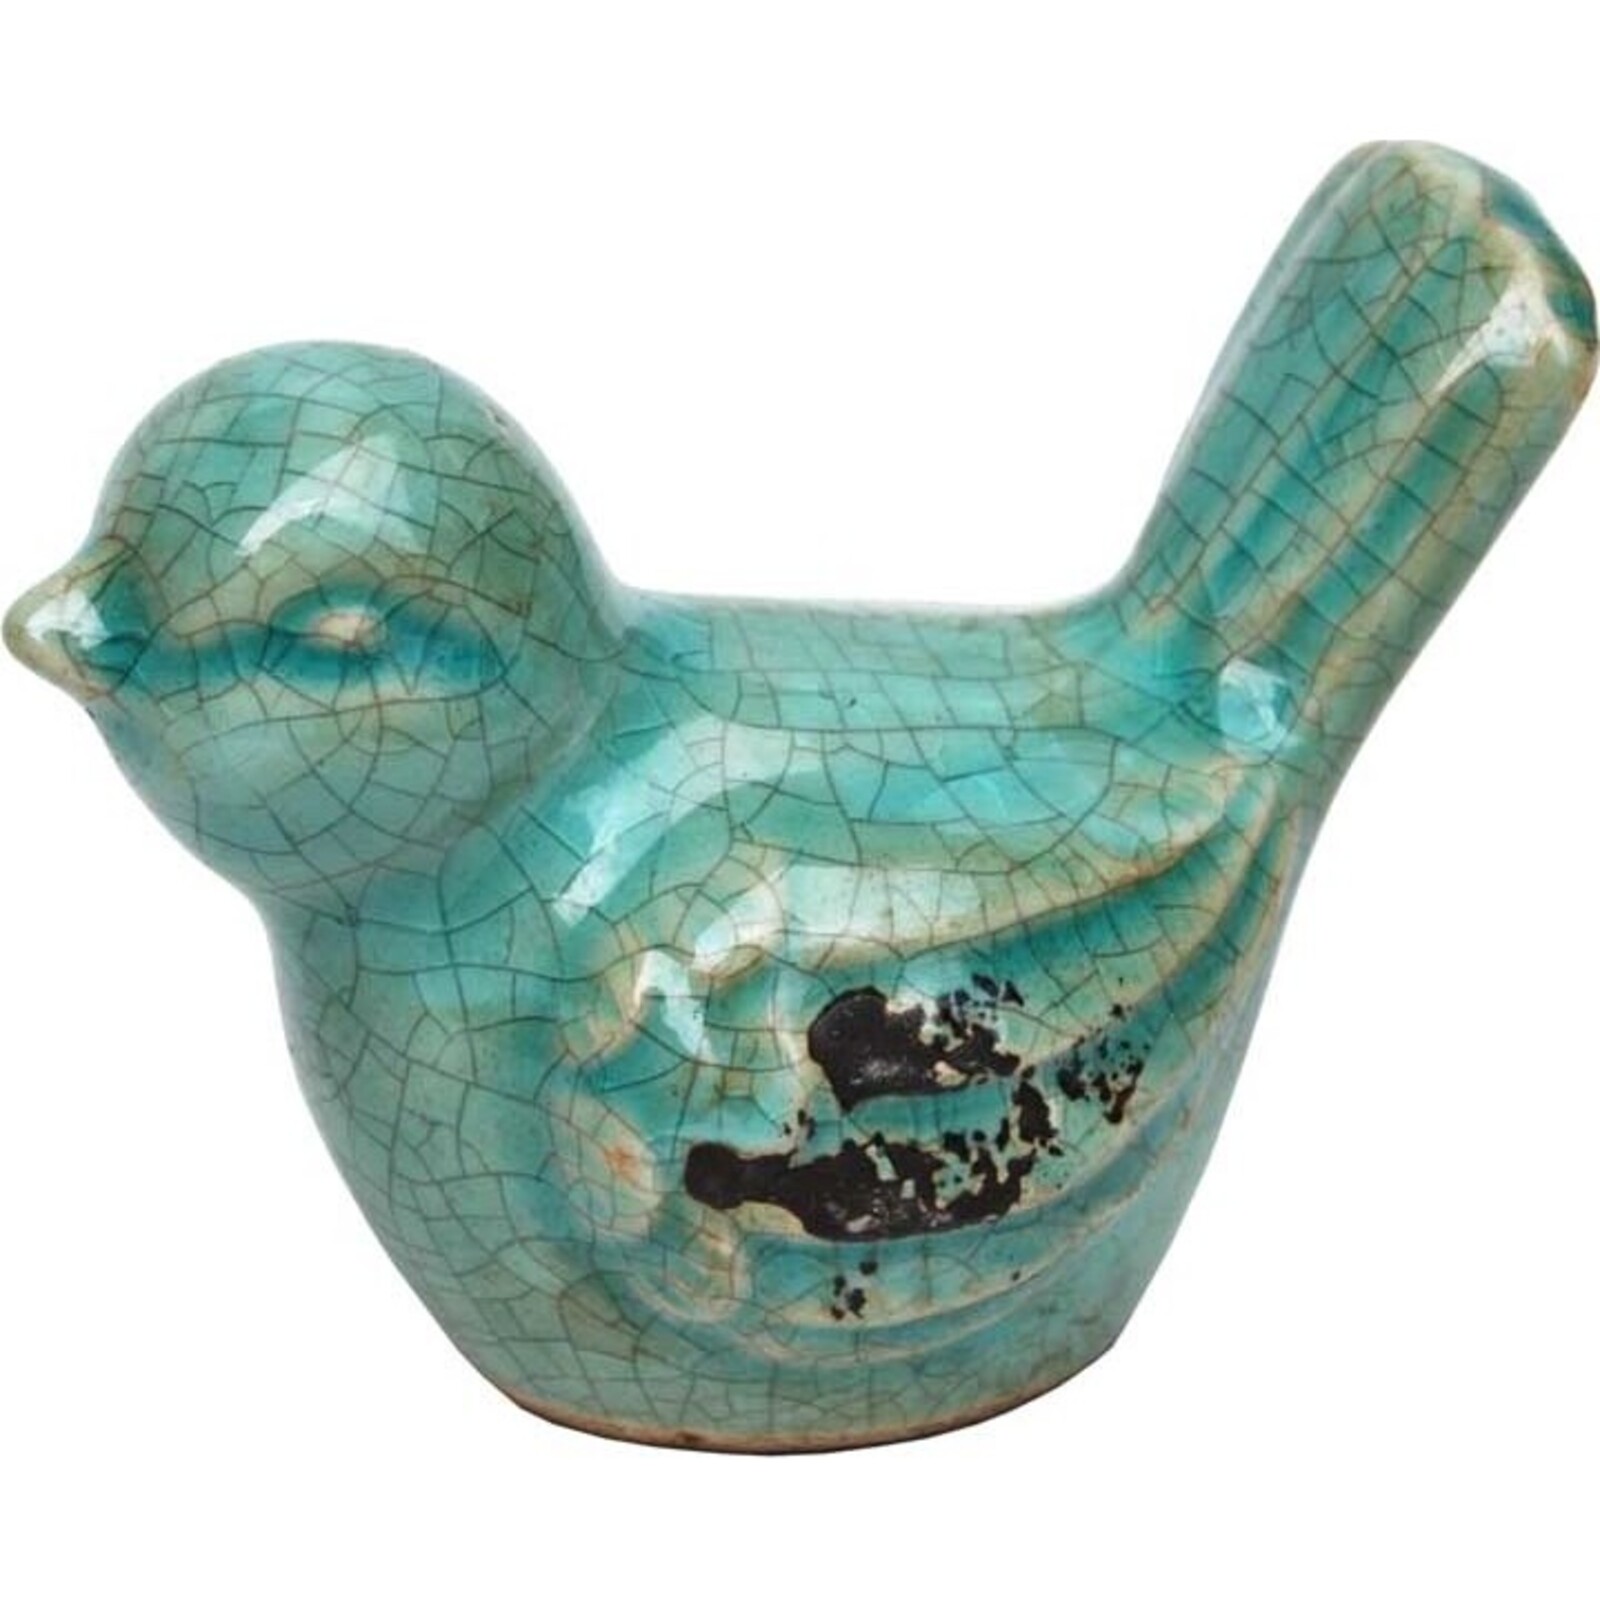 Ceramic Bird - Up